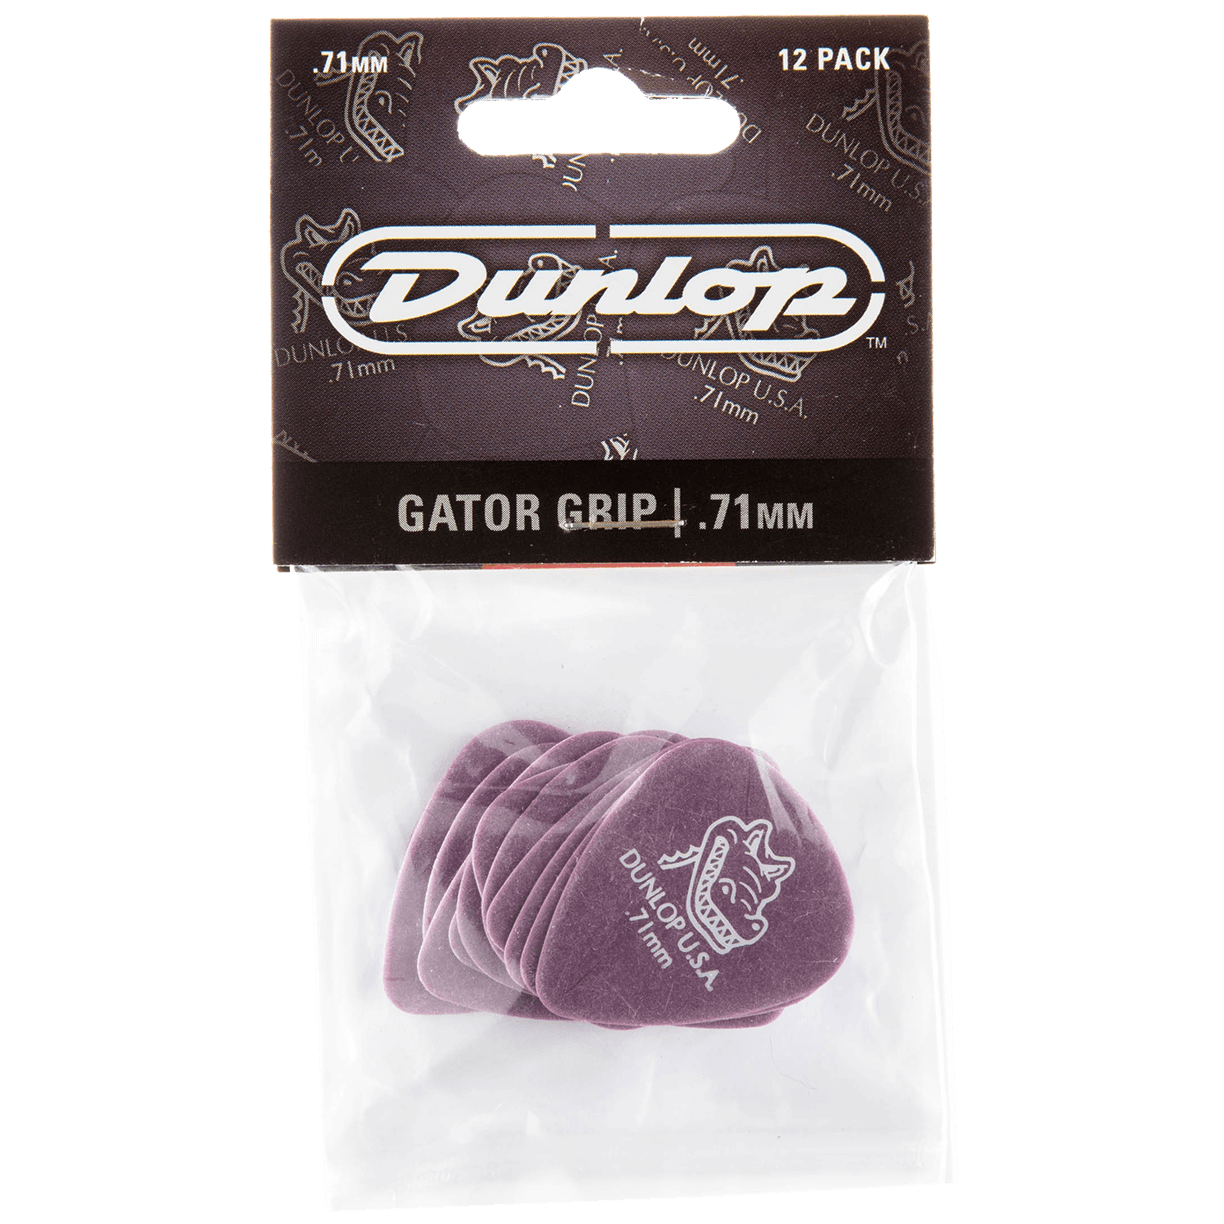 Dunlop Gator Grip 0.71 Player's Pack 12 Stück